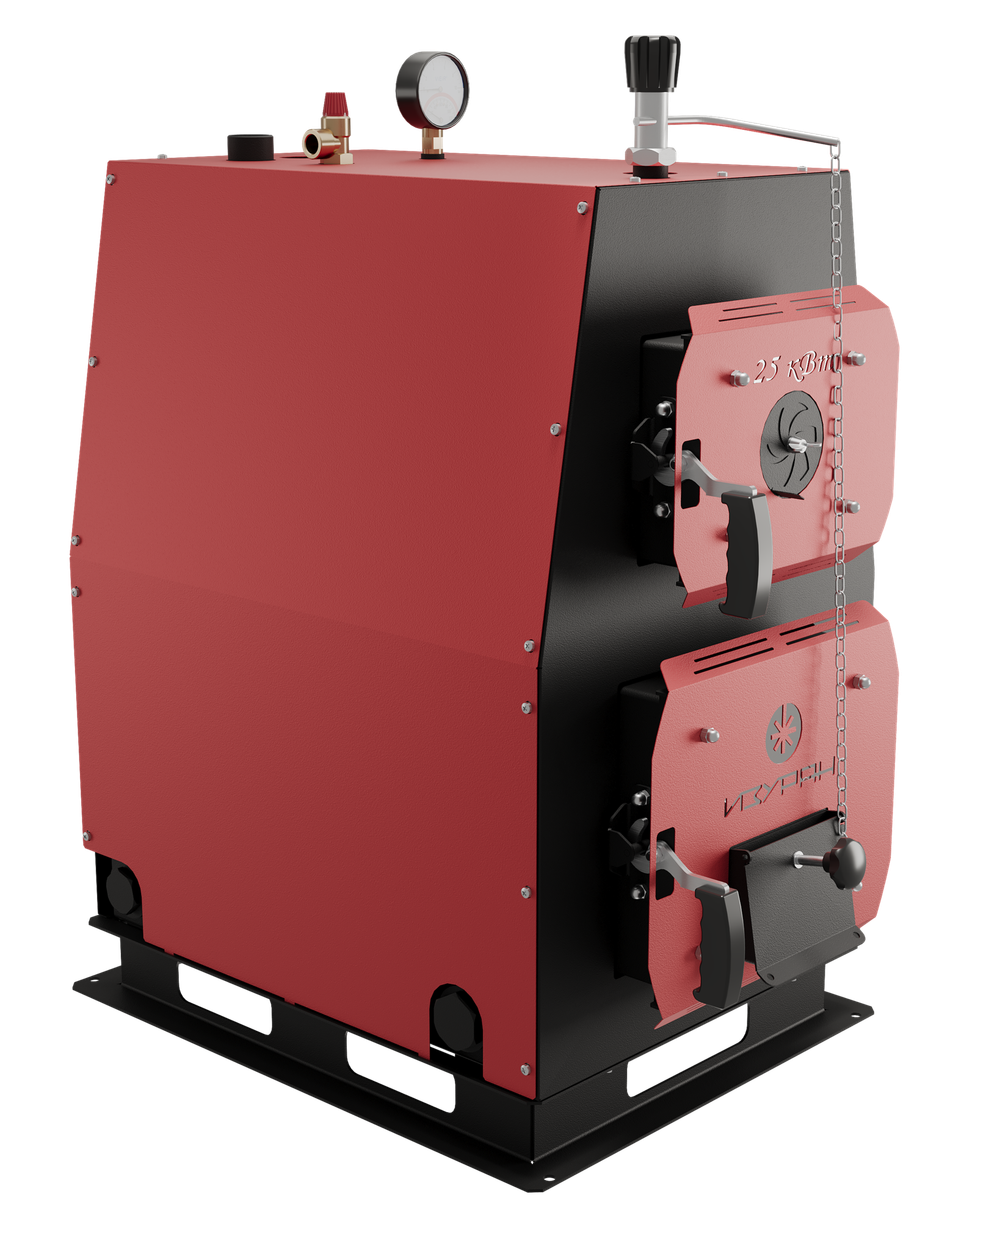 Твердотопливный котел длительного горения Изуран-25 в кожухе на 25 кВт. Отапливаемое помещение до 675 куб.м. Производитель - Изуран